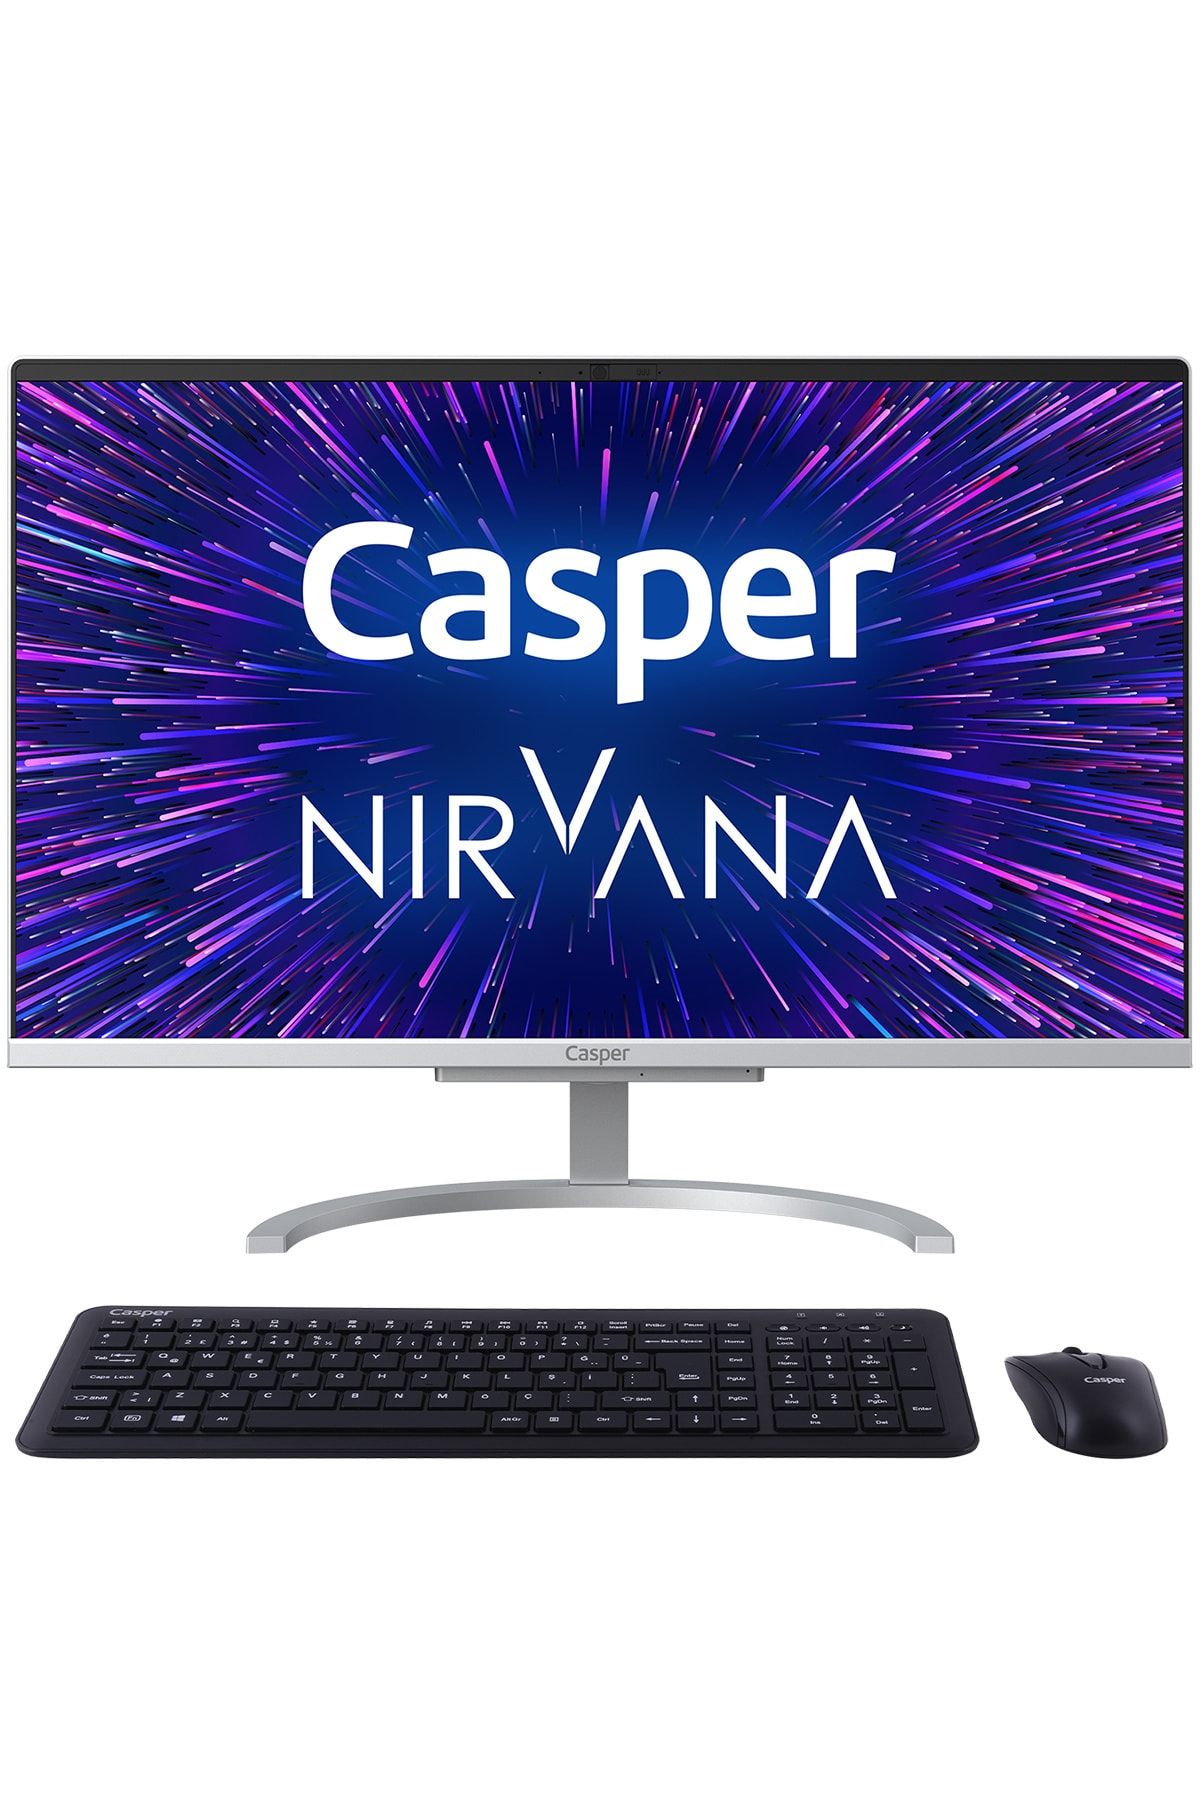 Casper Nirvana A46.1005-8d00r-v Intel Core I3-1005g1 8gb 240gb Ssd Windows 10 Pro 21.5" Fhd